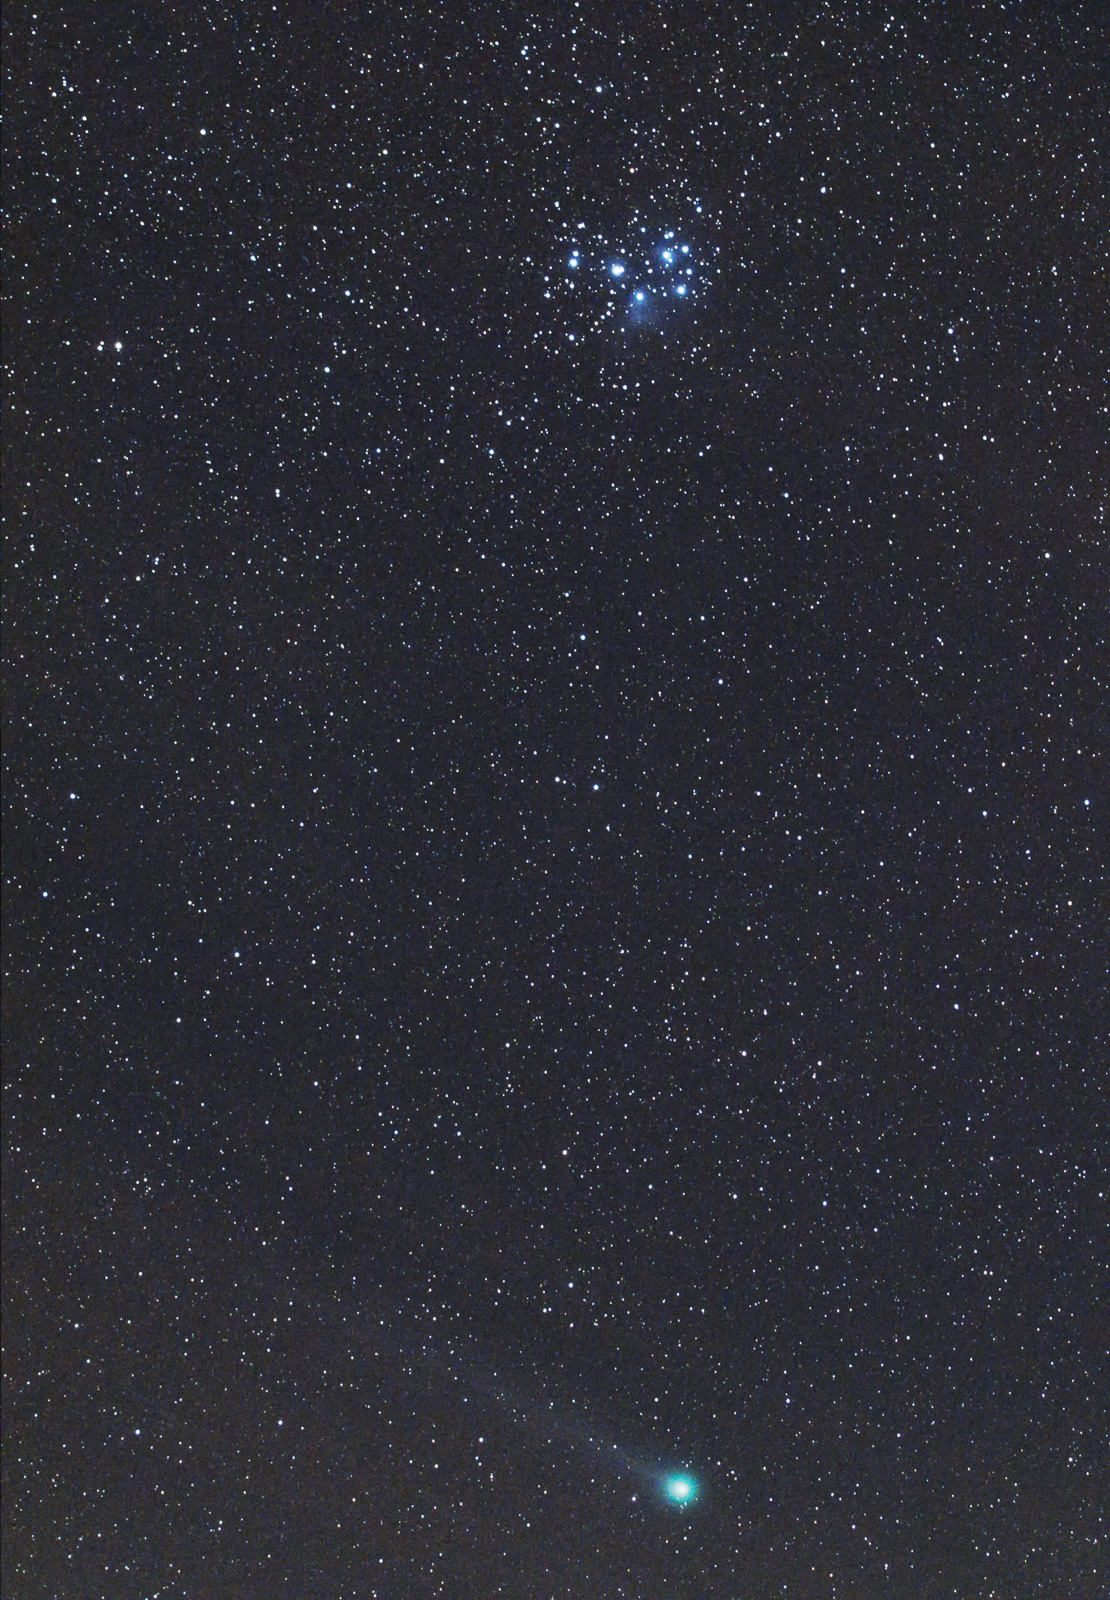 14.01.2015 Comet Lovejoy and Plejades